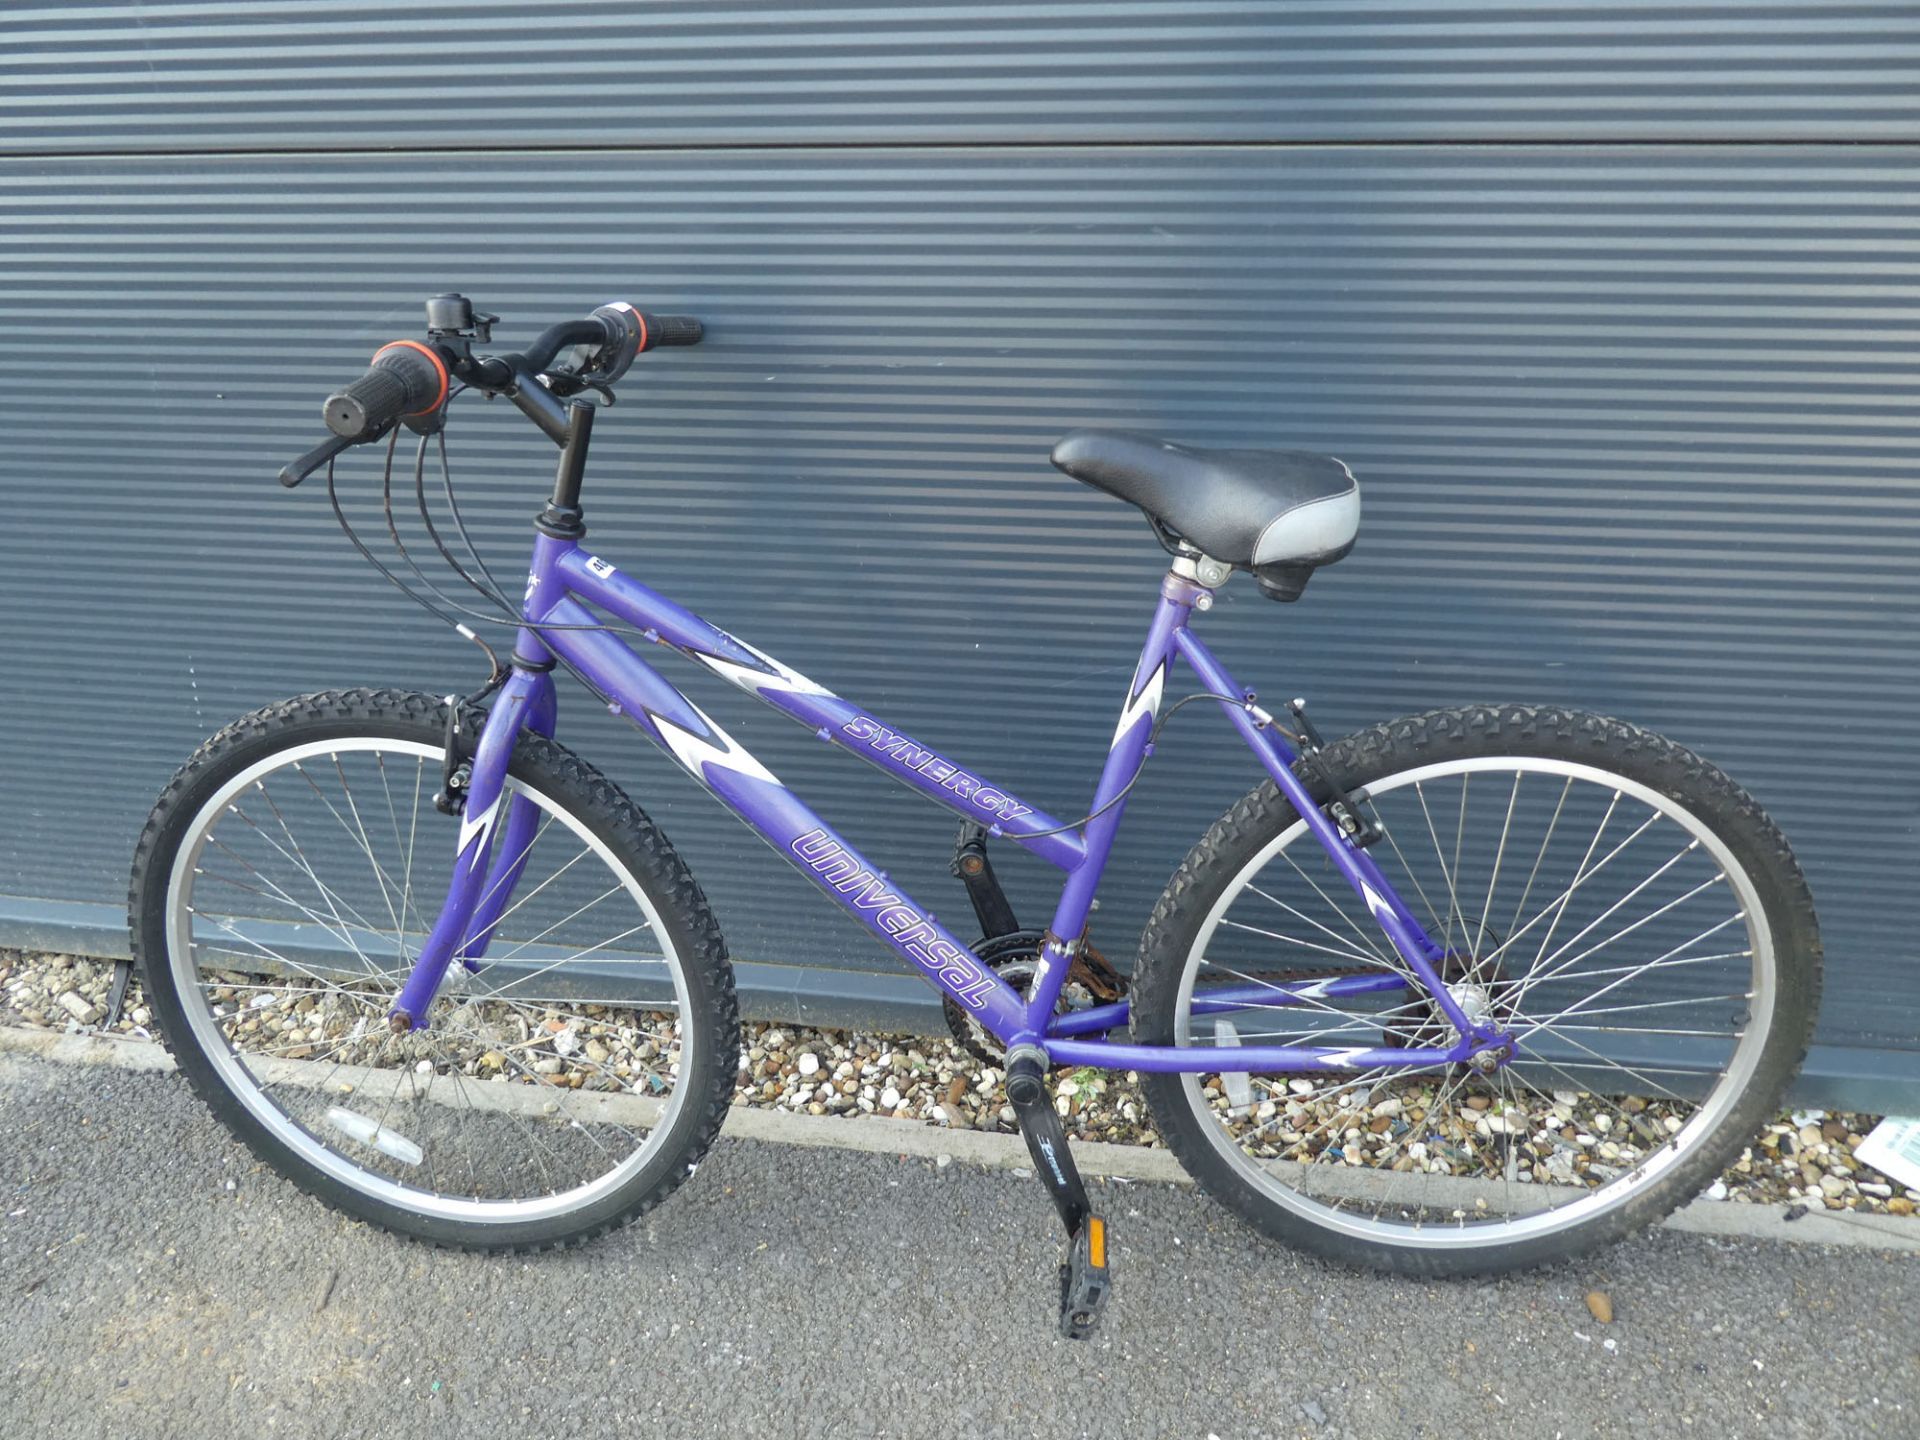 Purple and white Universal girls mountain bike